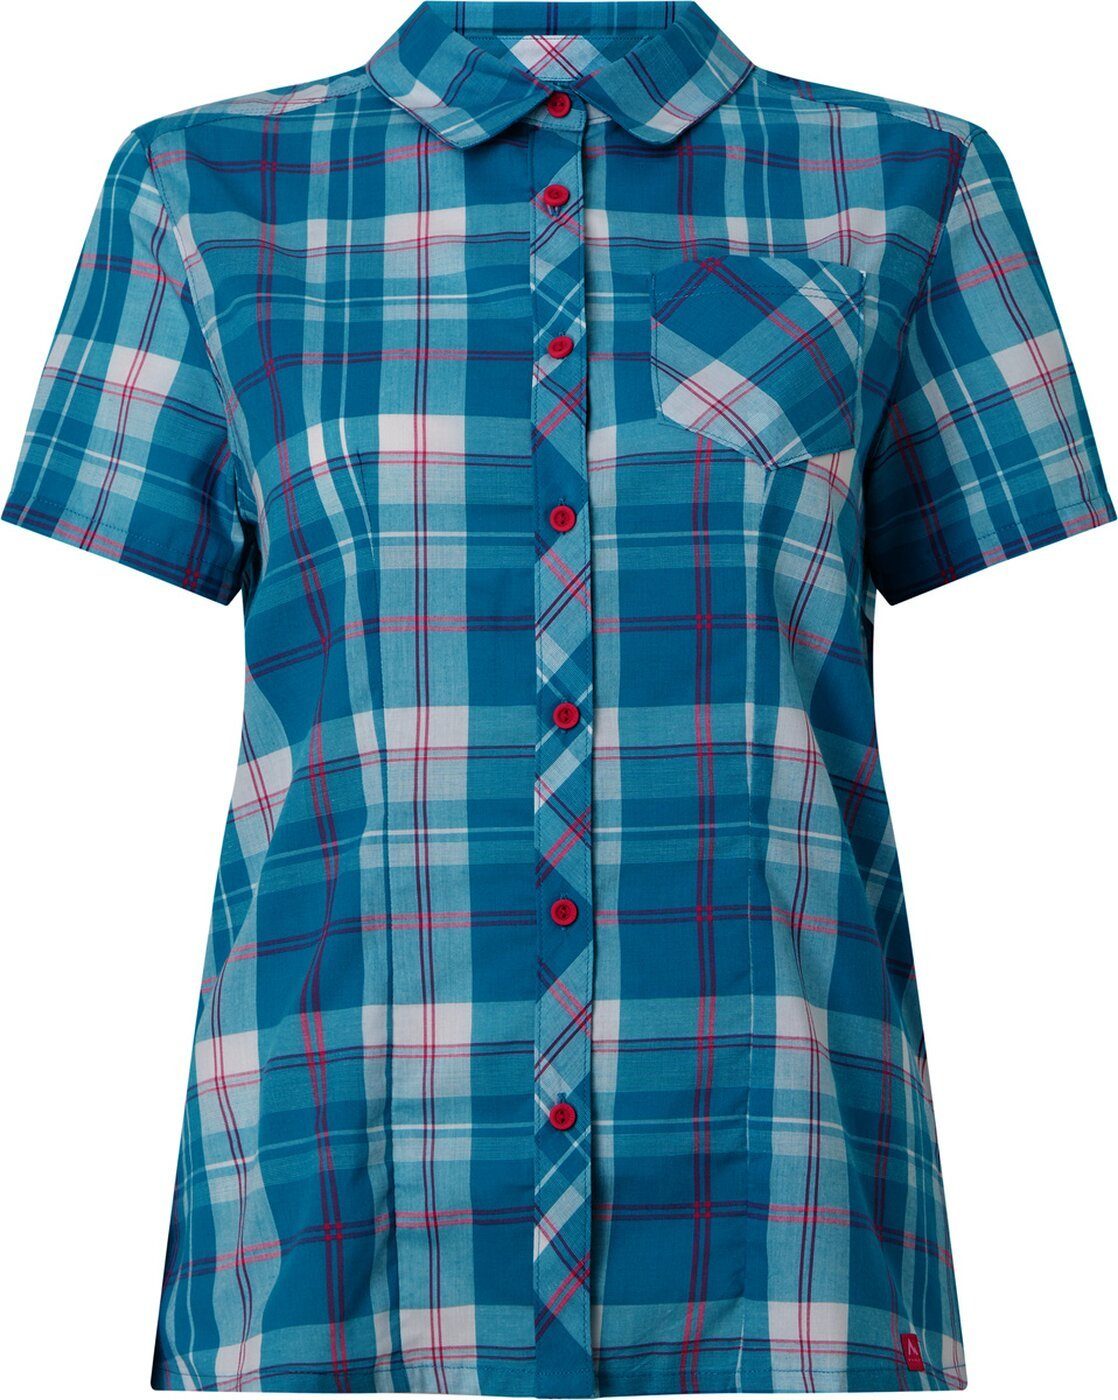 McKINLEY Outdoorbluse Armon W - Damen Bluse - blau/weiß/rot